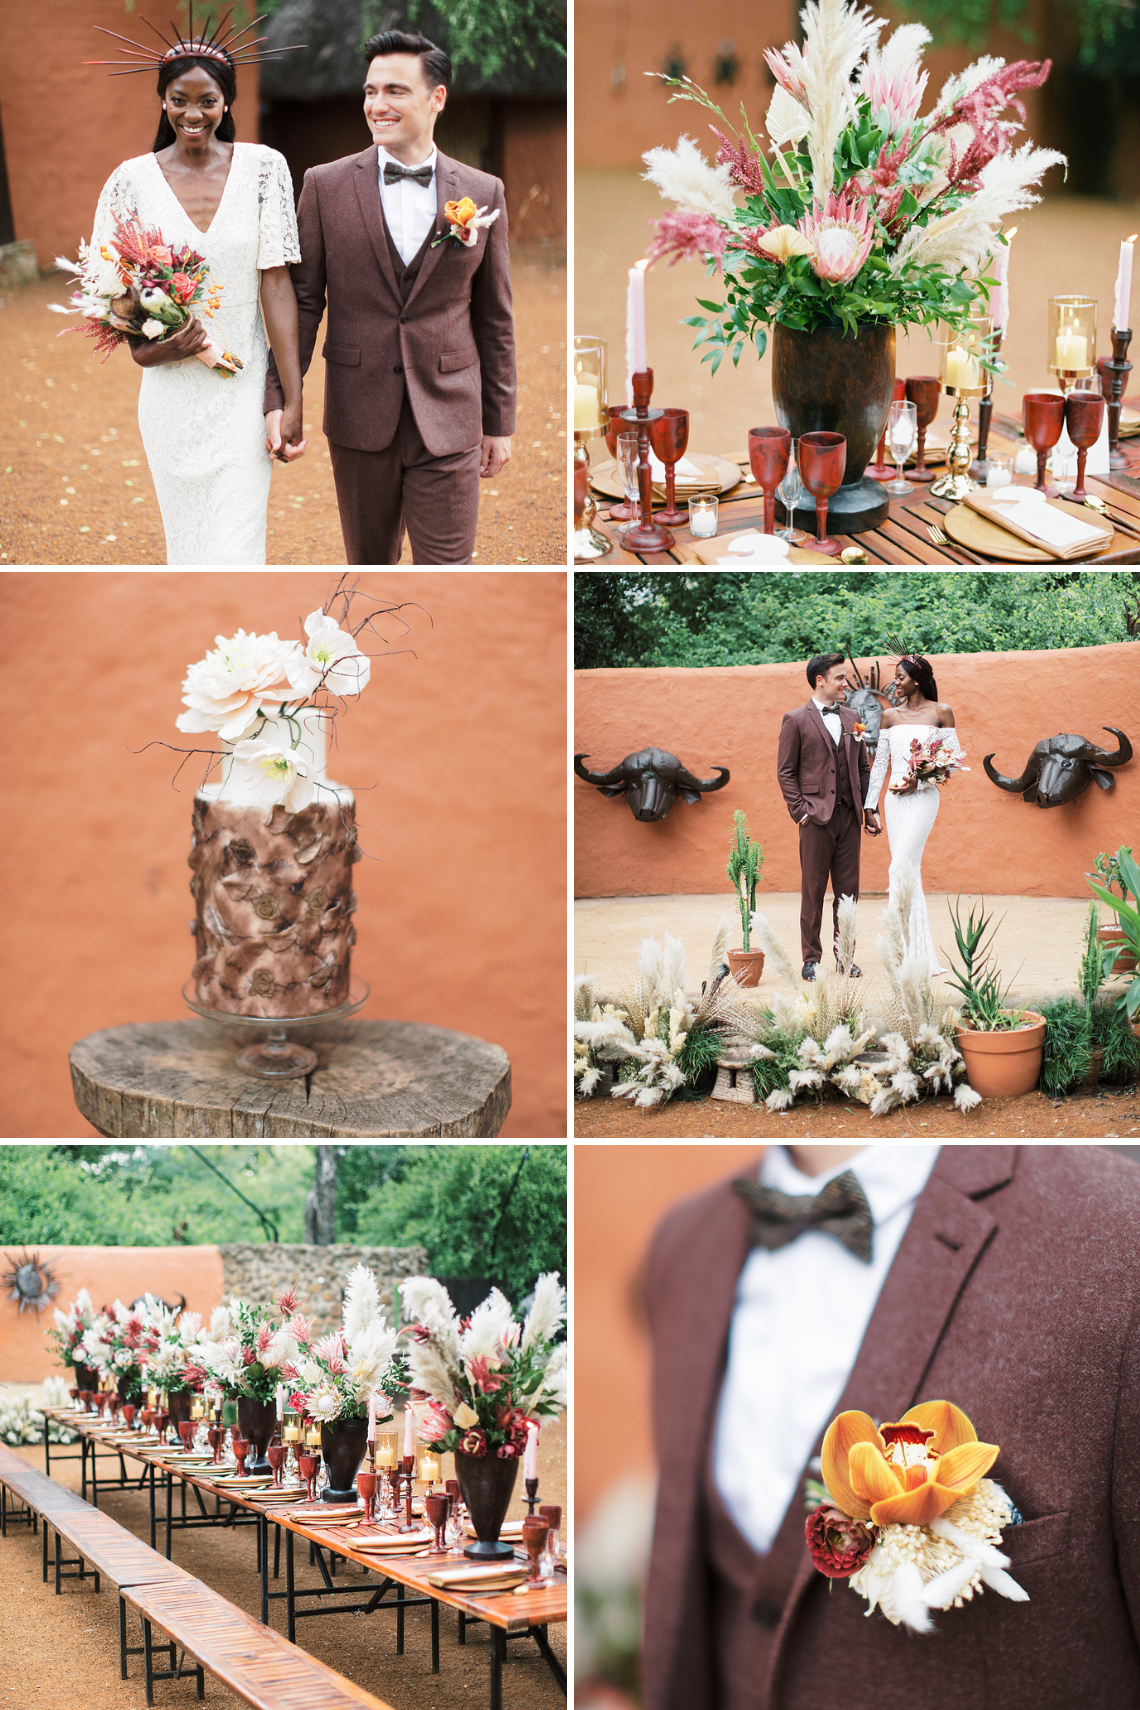 The Best Wedding Inspiration of 2020 Bridal Musings Love From Mwai Stepan Vrzala Zambia African Boma Wedding Inspiration - Mẹo Lập kế hoạch & Cảm hứng Đám cưới Tốt nhất từ ​​khắp Châu Phi